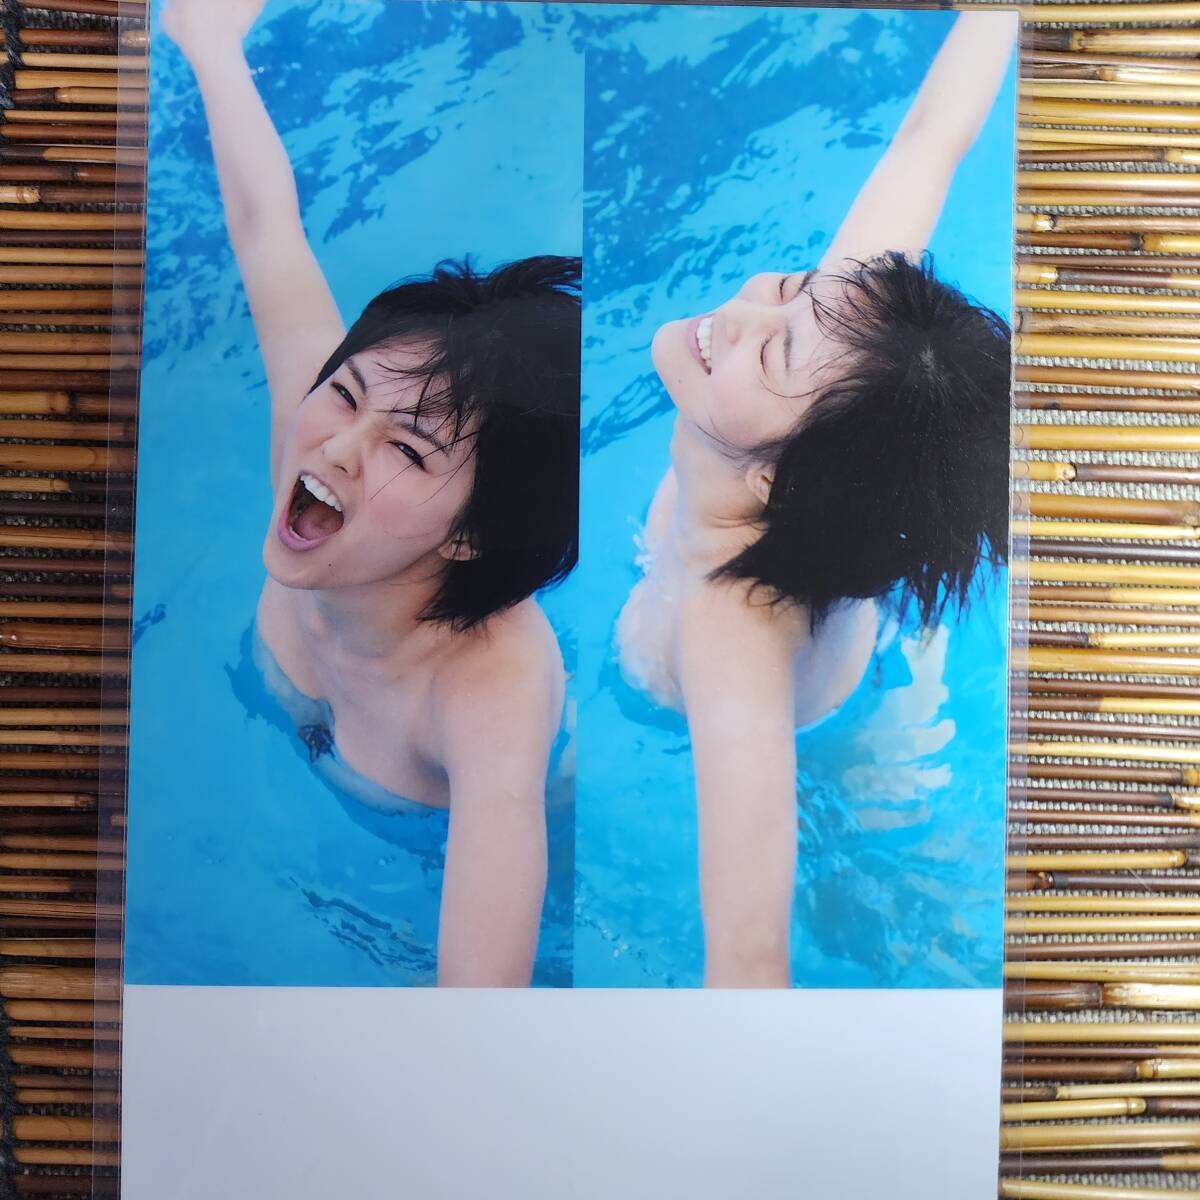 [ высокое качество толстый 150μ ламинирование обработка ] Yamamoto Sayaka купальный костюм B5 журнал вырезки 4 страница [ bikini model ]l7